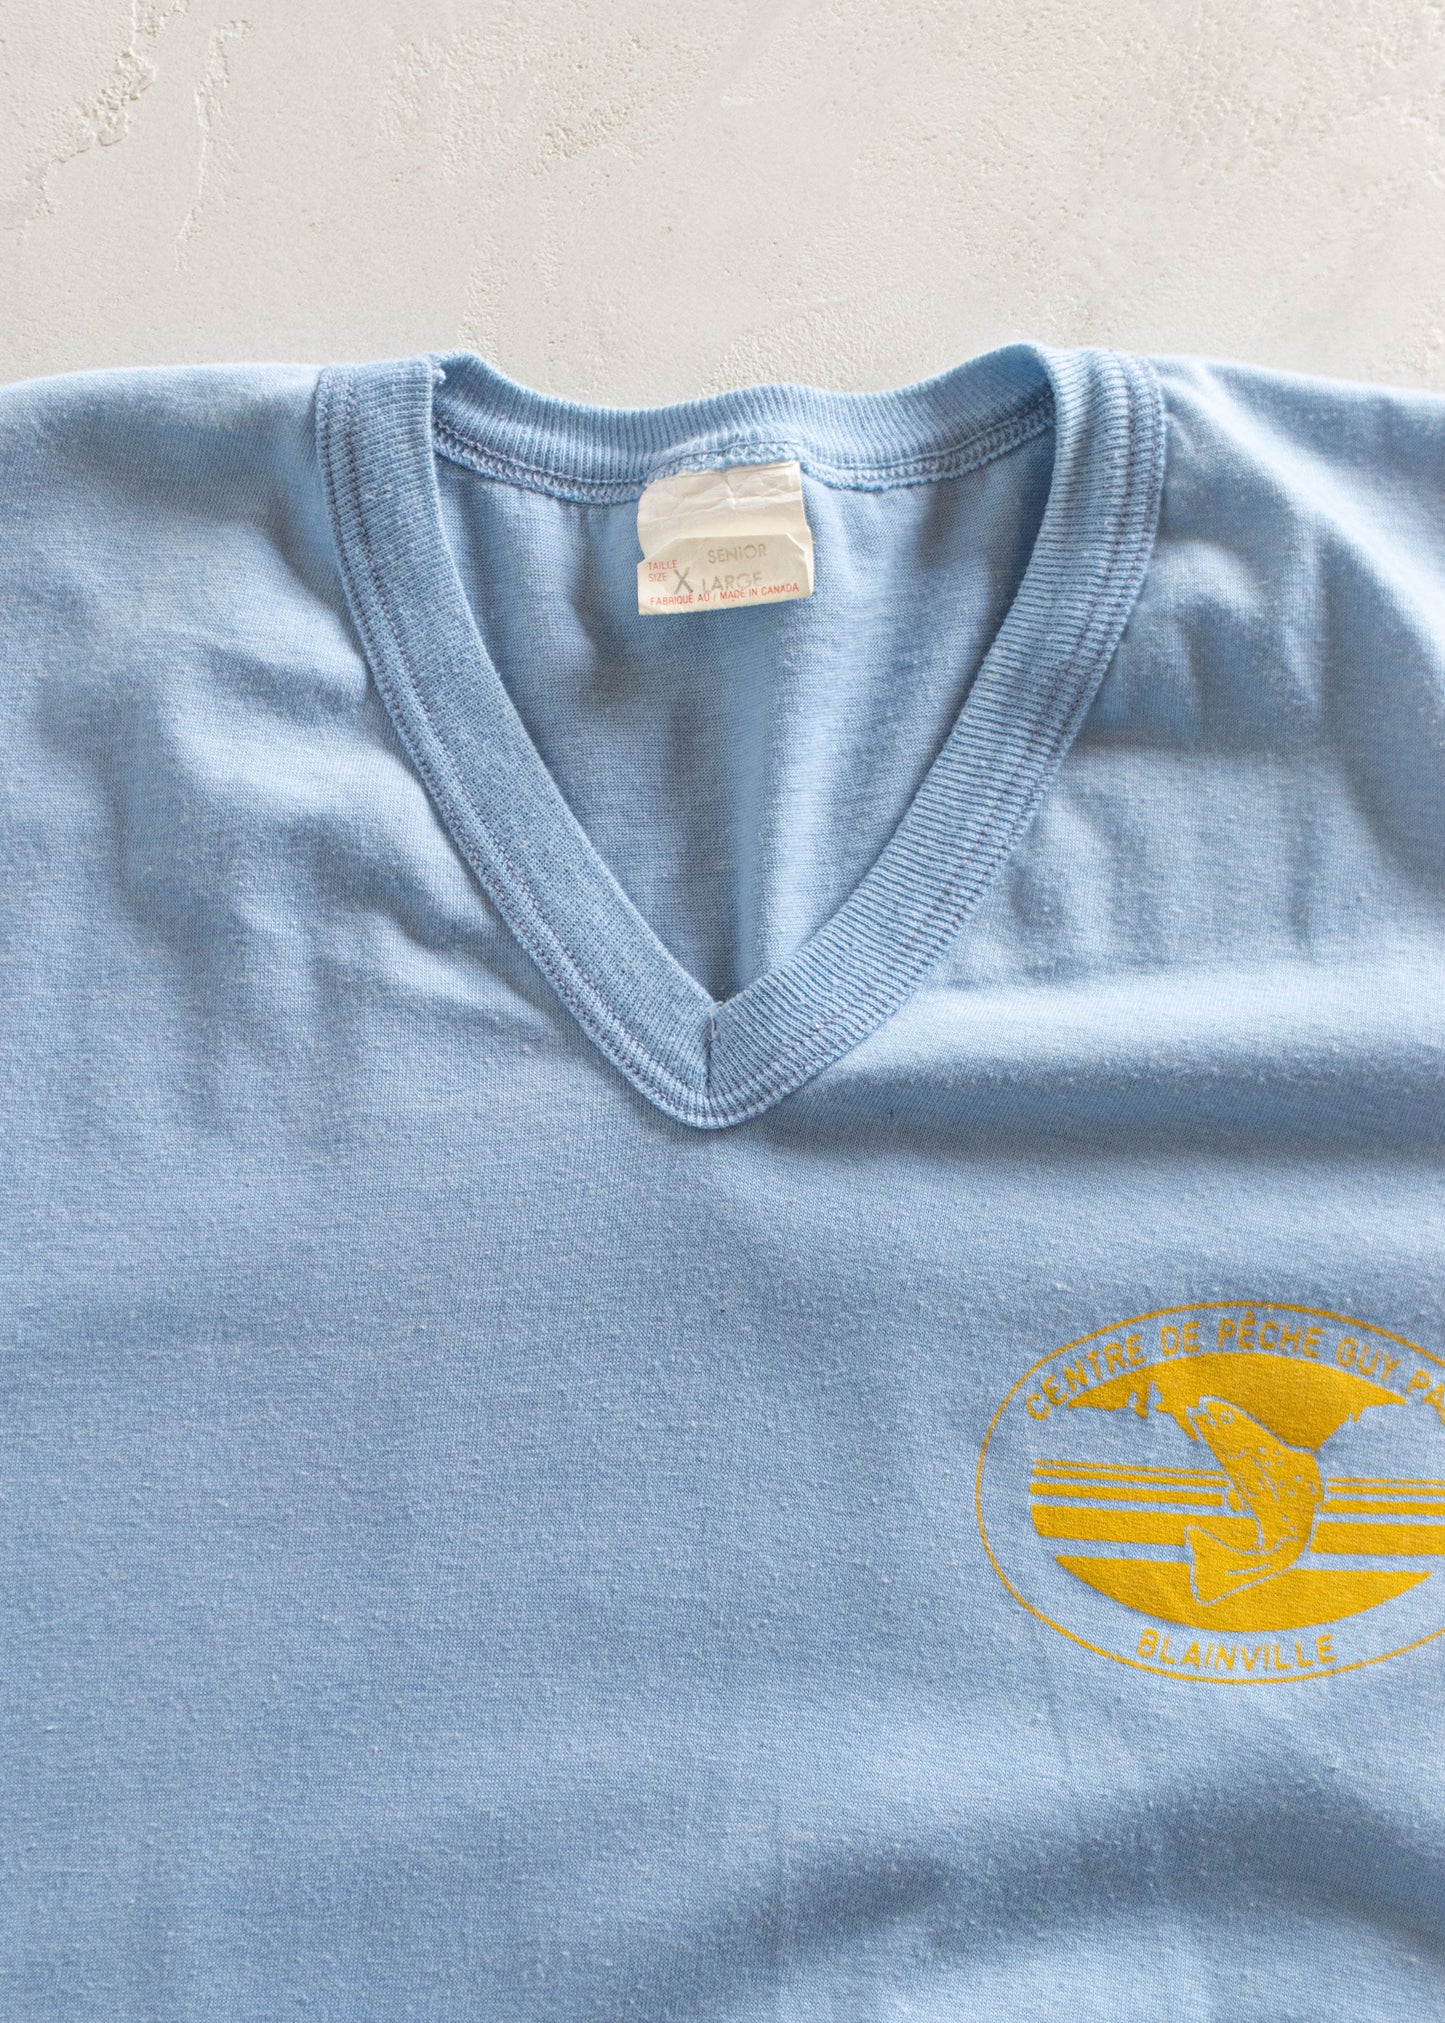 Vintage 1980s Centre de Pêche Blainville Souvenir T-Shirt Size S/M